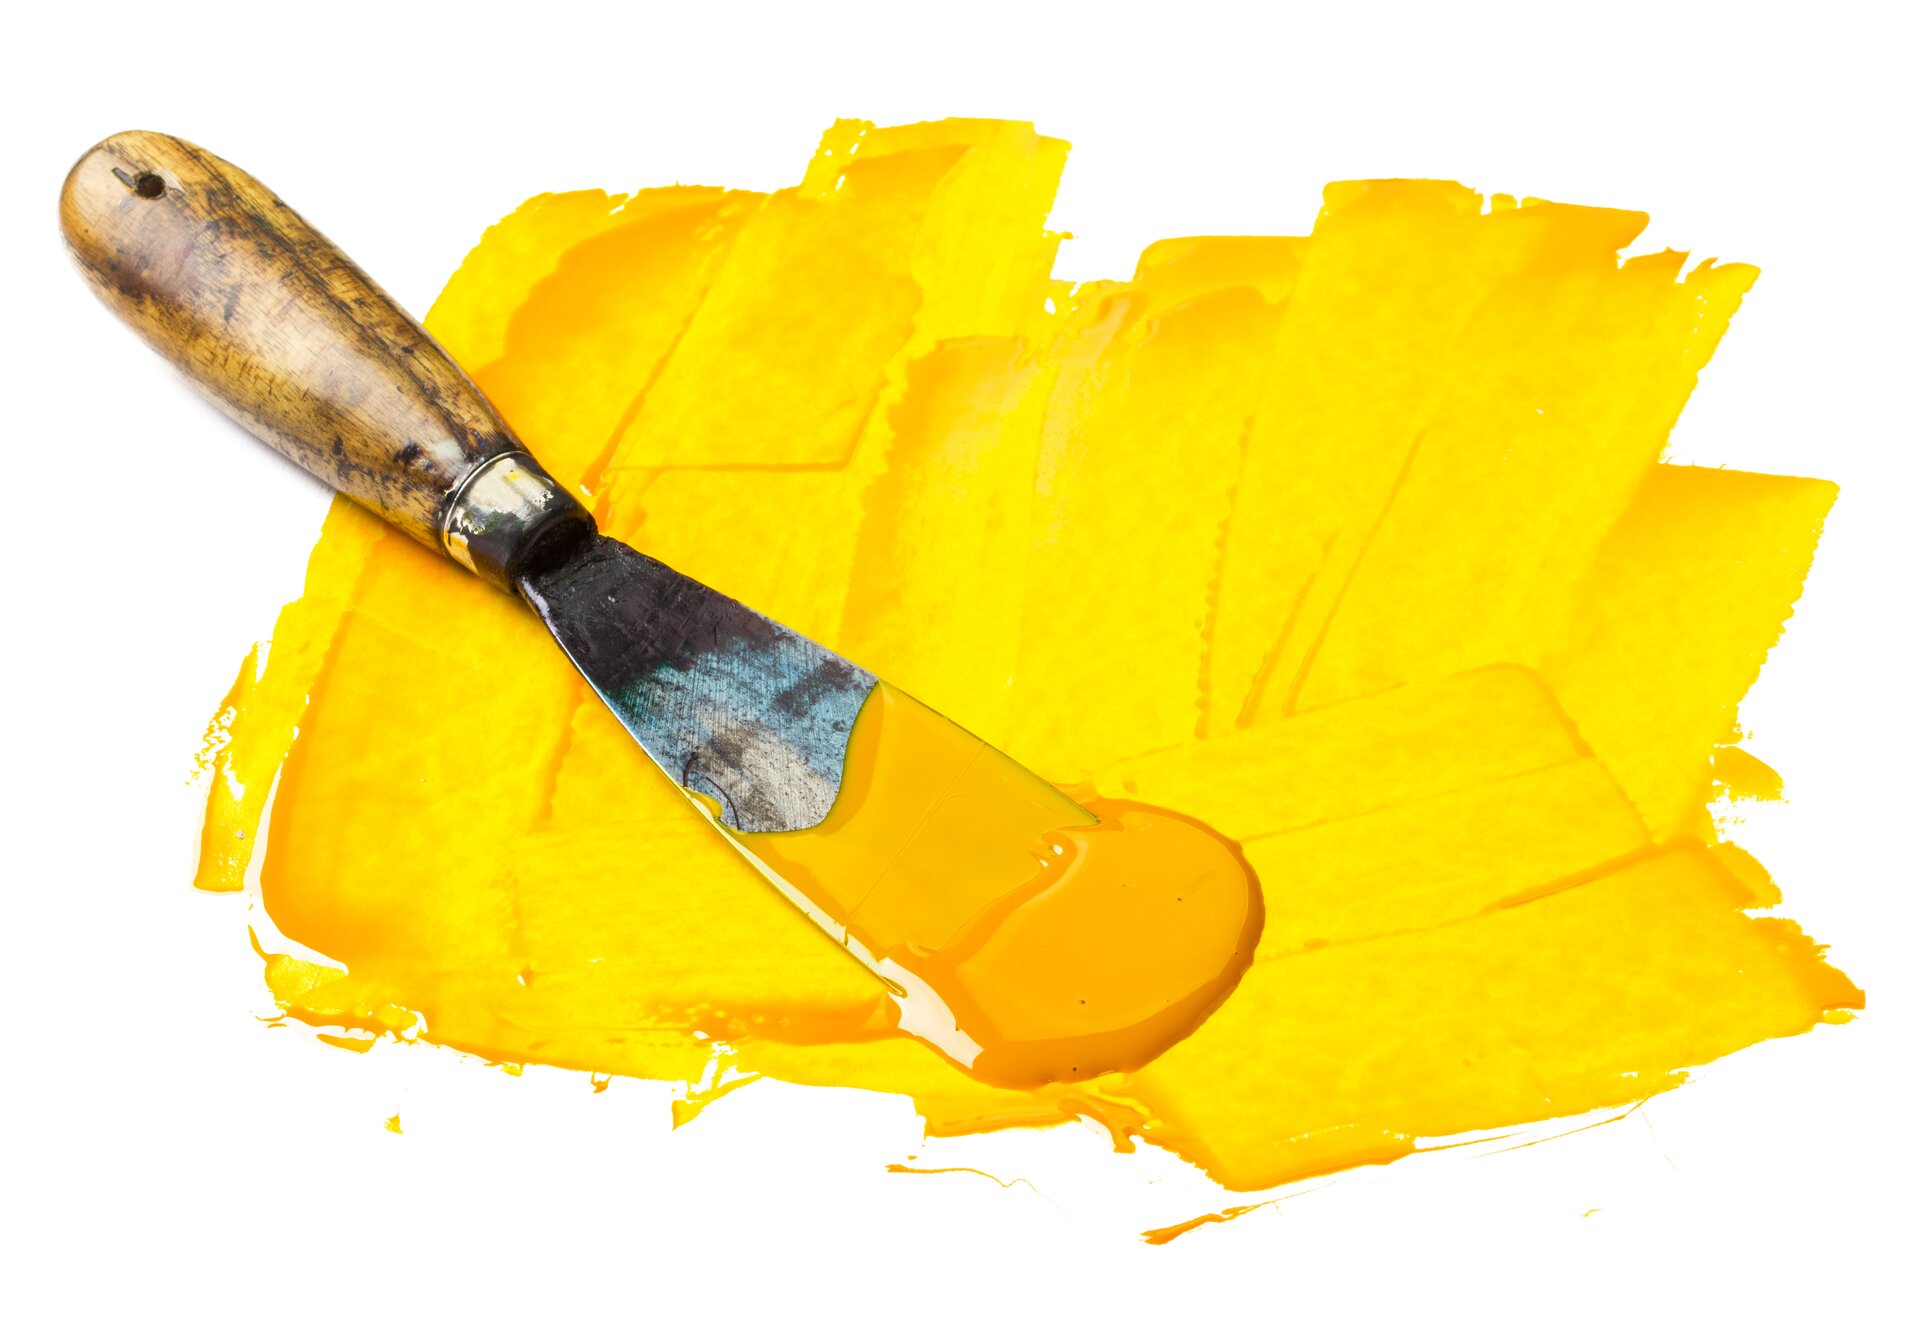 Ilustracja jest fotografią żółtej plamy barwnej,nakładanej szpachlą malarską. Gruba warstwa farby jest nakładana w różnych kierunkach.